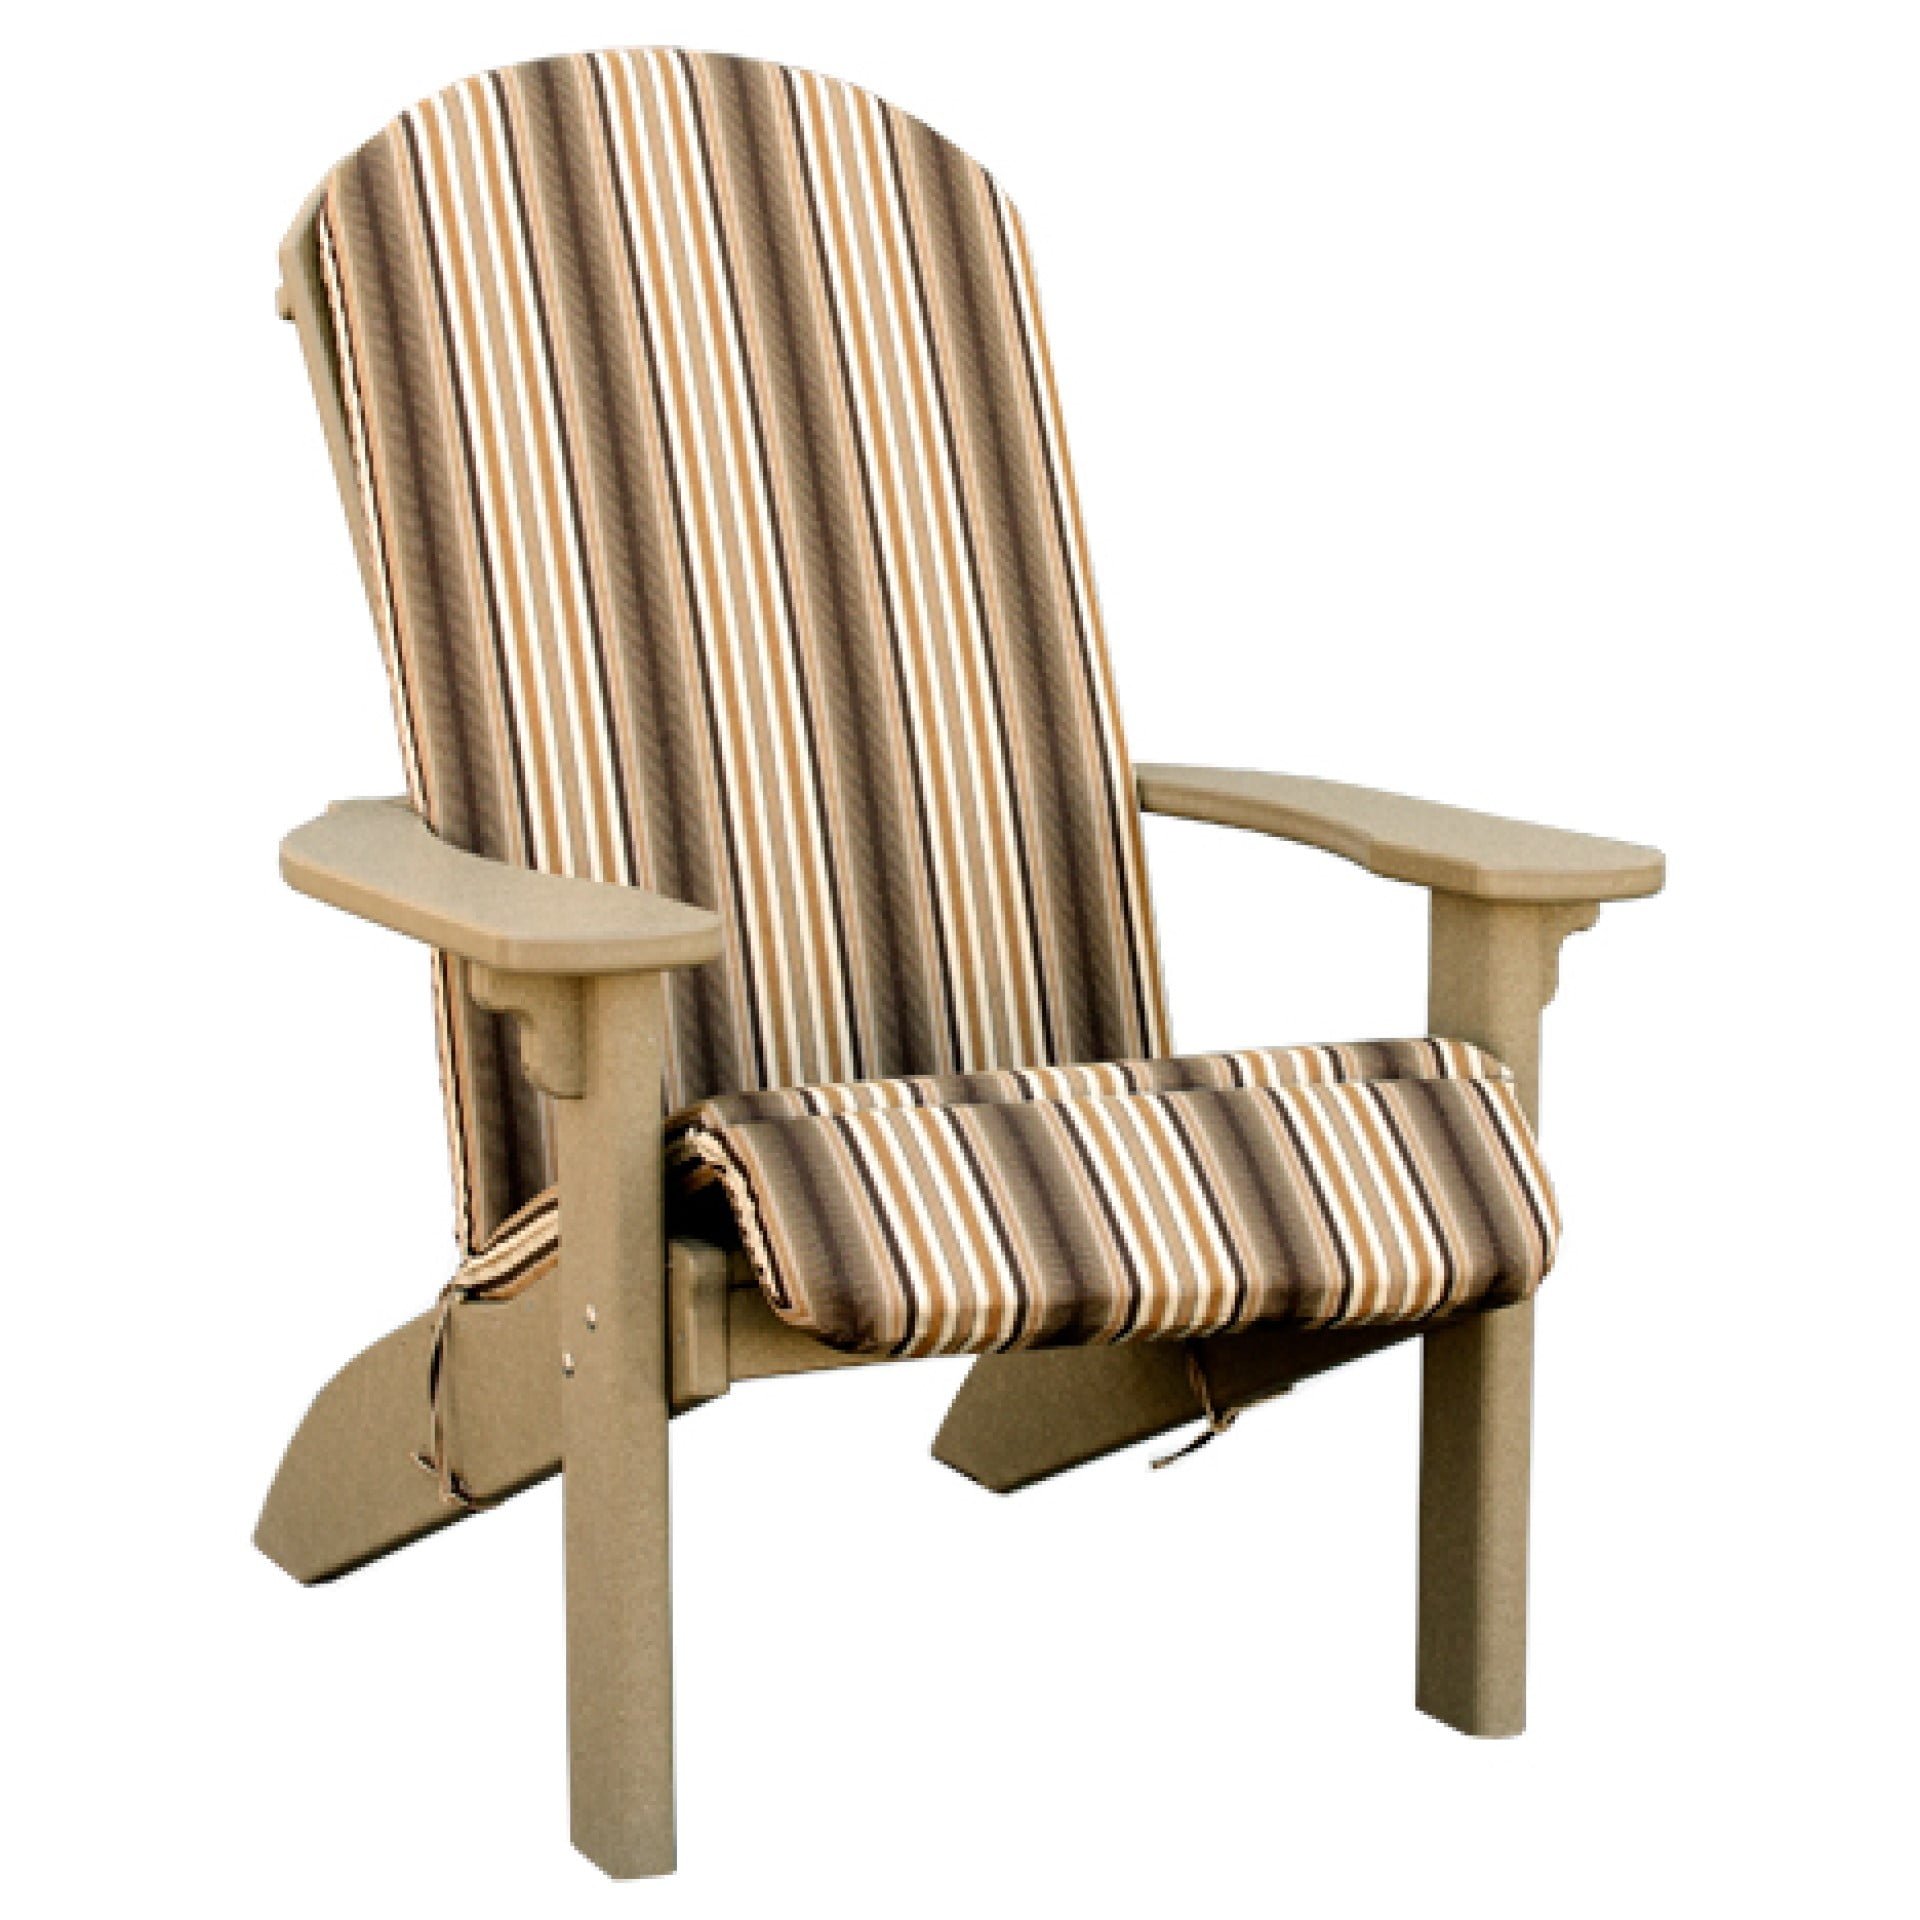 Finch SeaAira Adirondack Chair Cushion